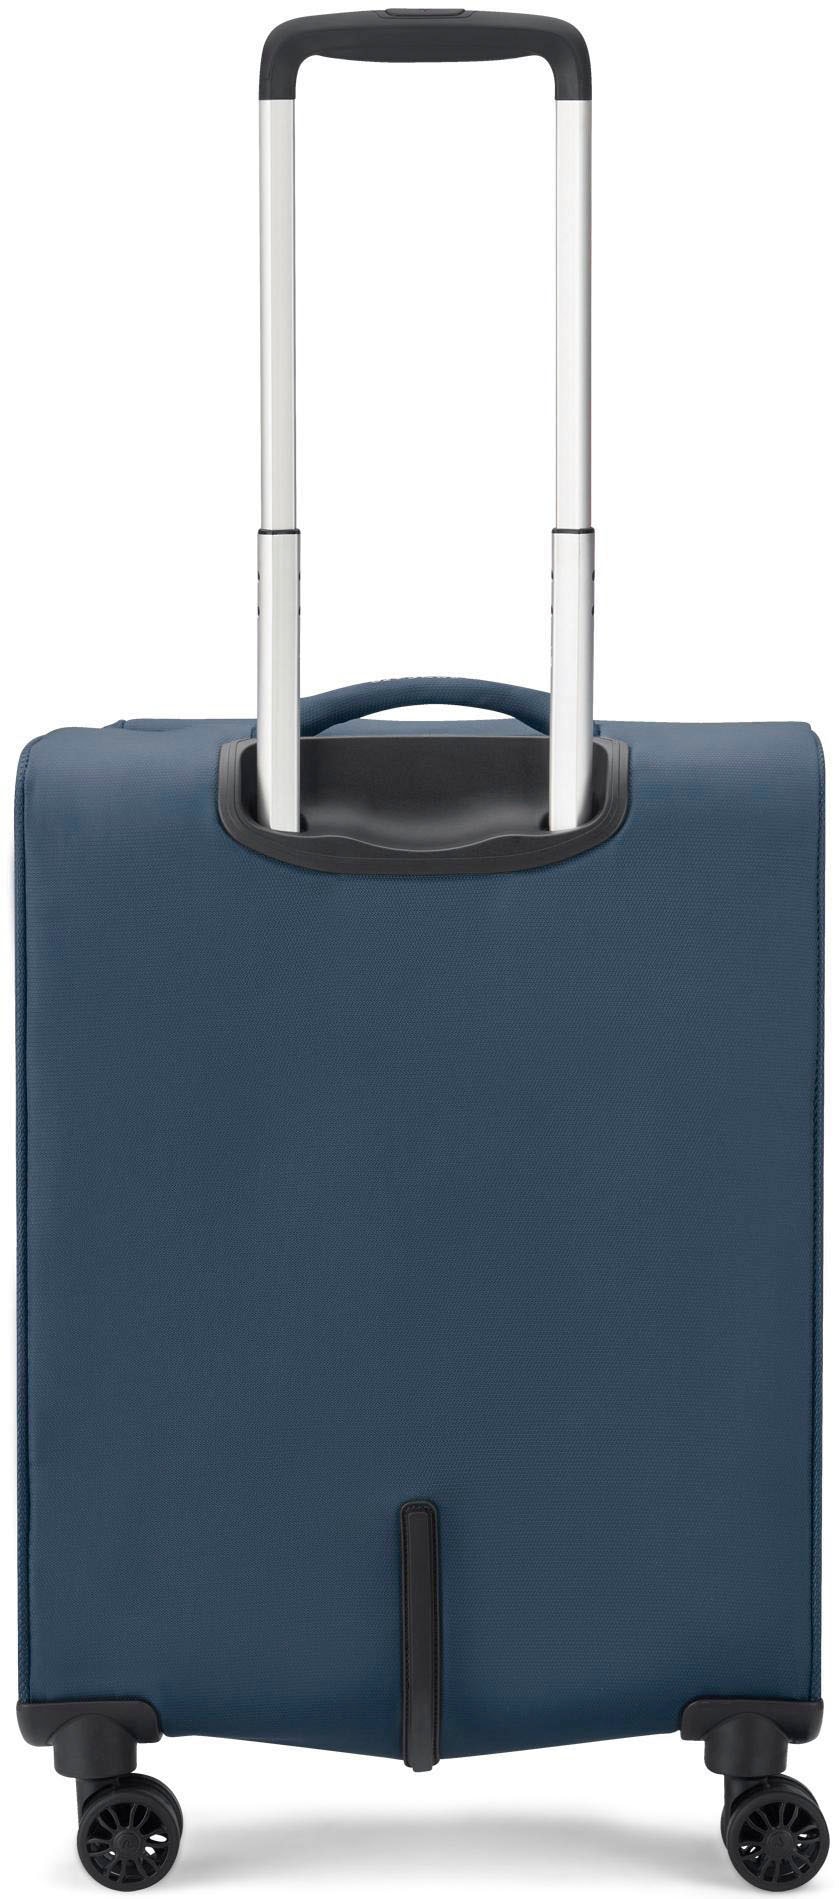 RONCATO Handgepäck-Trolley »Joy Carry-on, 55 cm, erweiterbar, dunkelblau«, 4 Rollen, Weichgepäck-Koffer Reisegepäck mit Volumenerweiterung und TSA Schloss